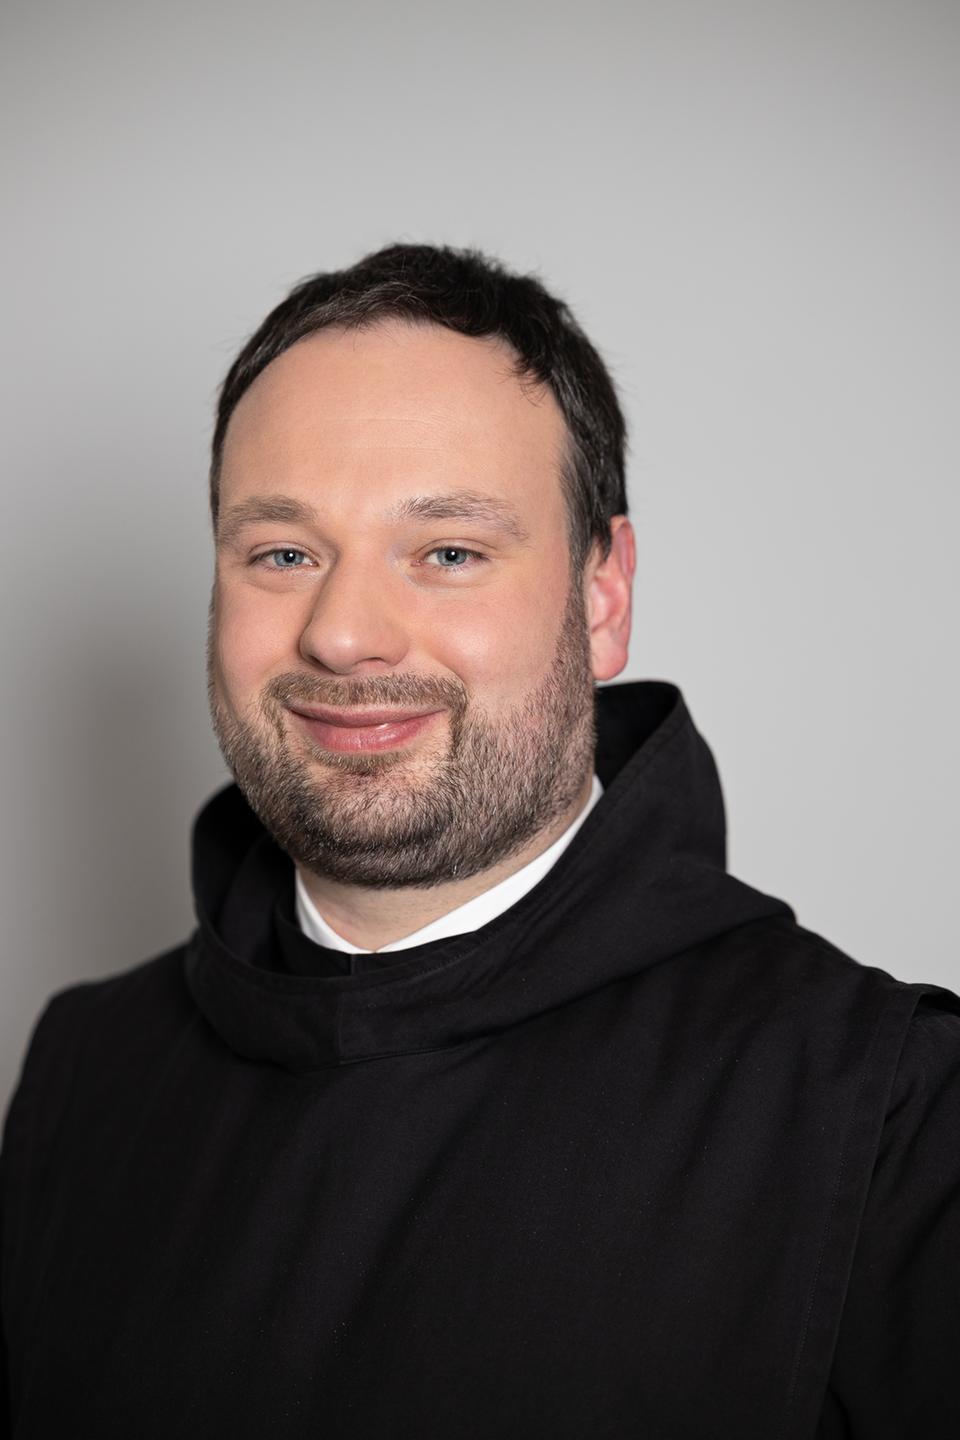 Pater Nikodemus Schnabel trägt eine schwarze Kutte und lächelt freundlich in die Kamera